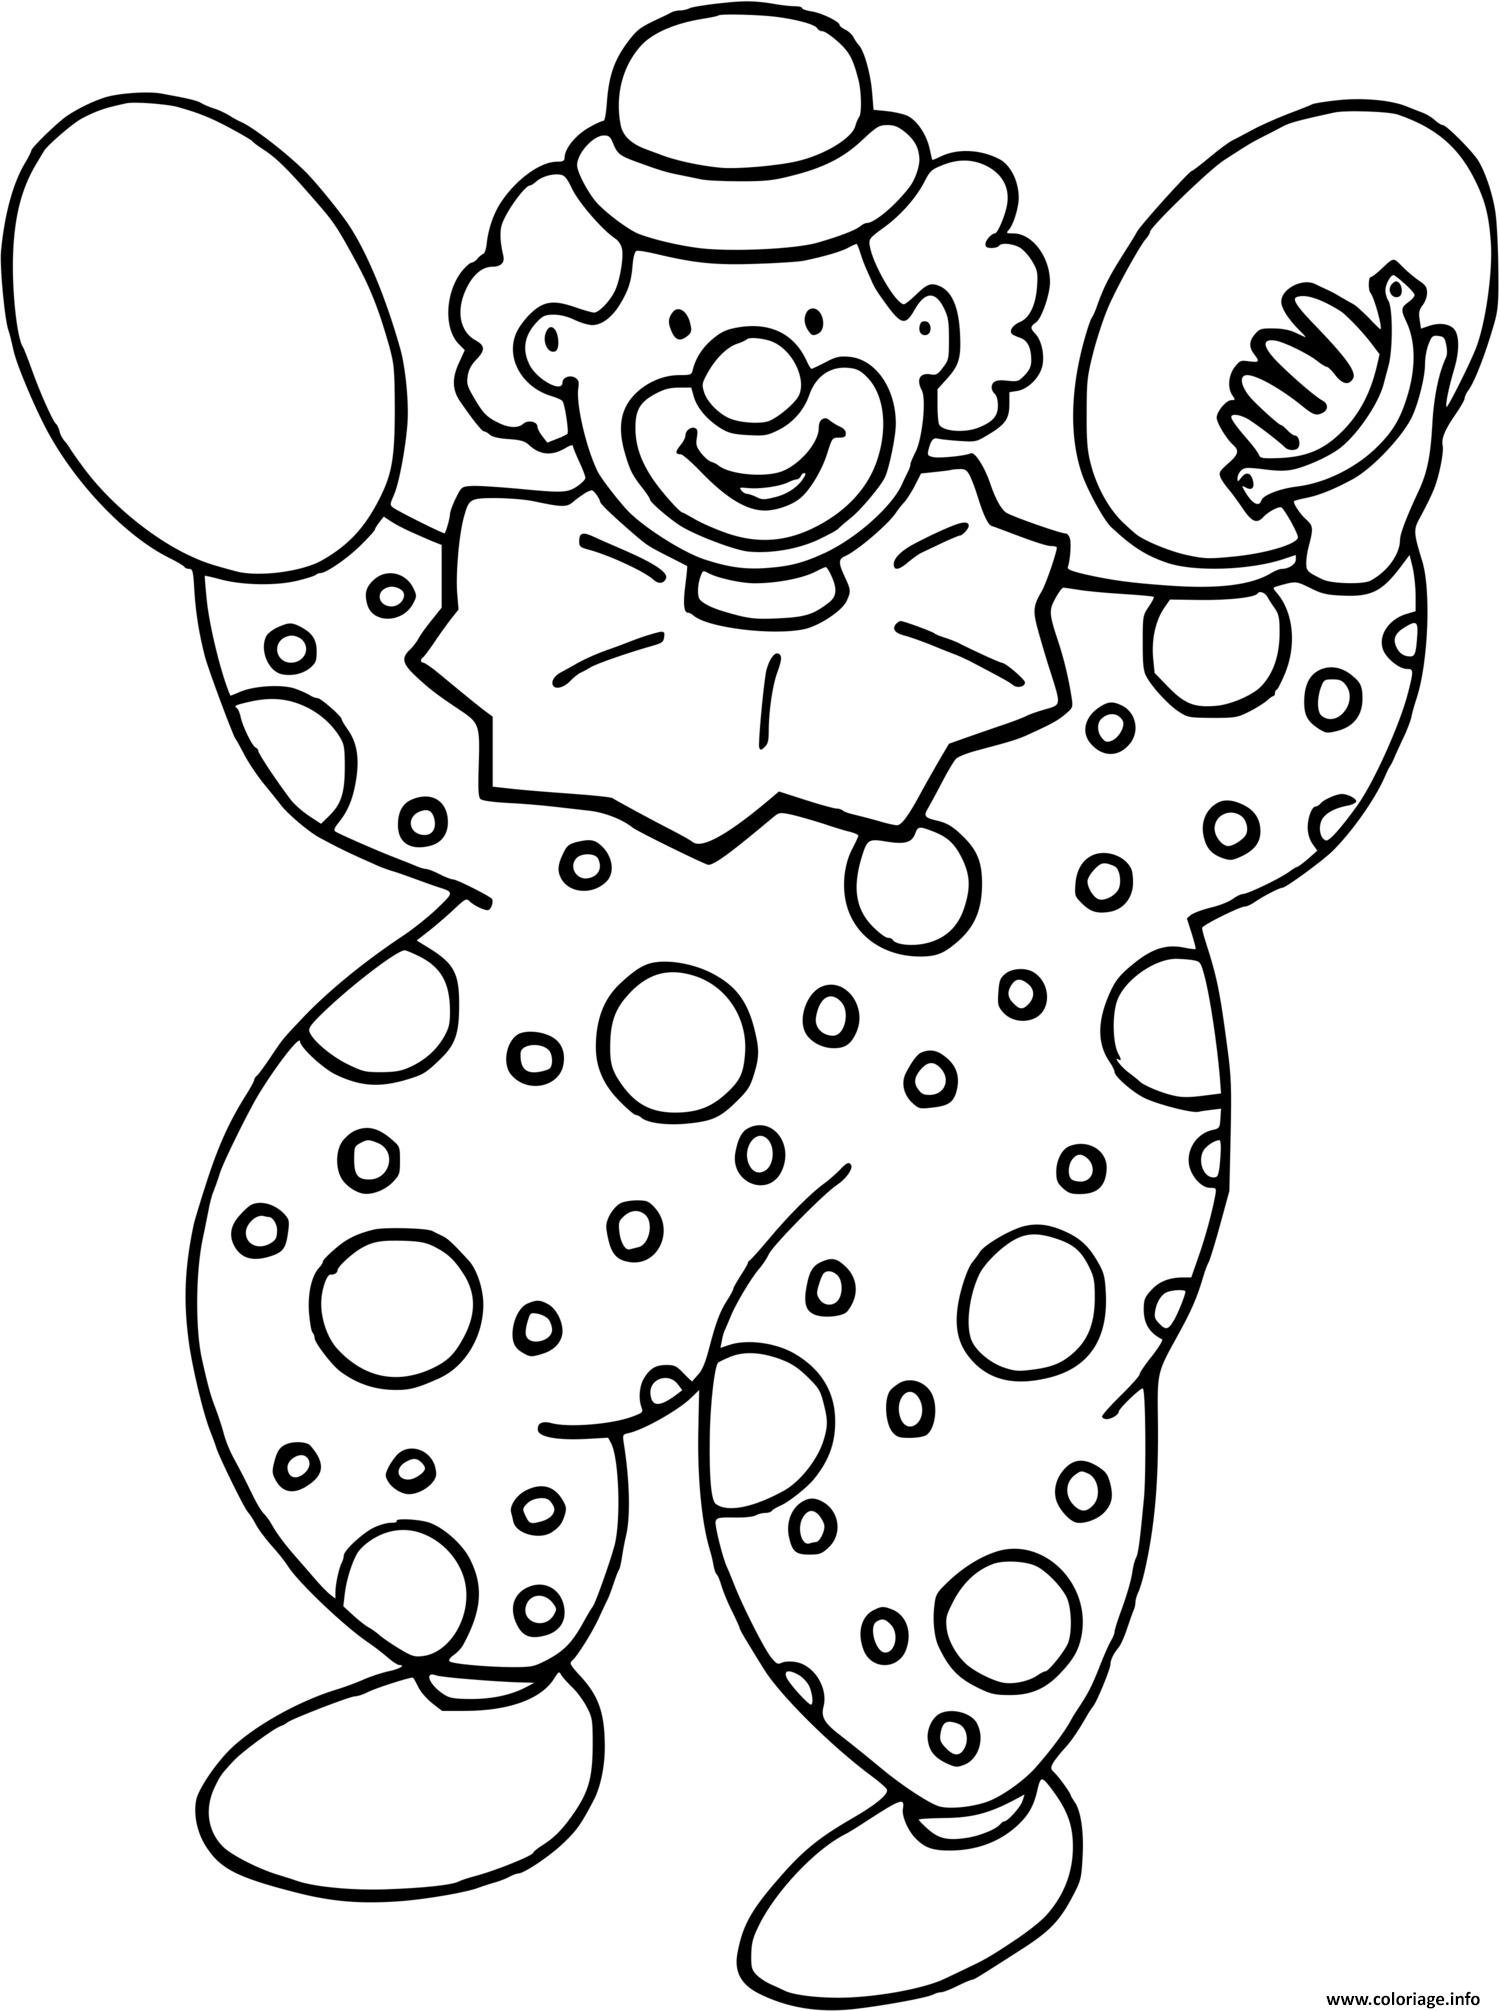 Клоун раскраска для детей 4 5 лет. Клоун раскраска. Клоун раскраска для детей. Раскраска весёлый клоун для детей. Клоун контур.